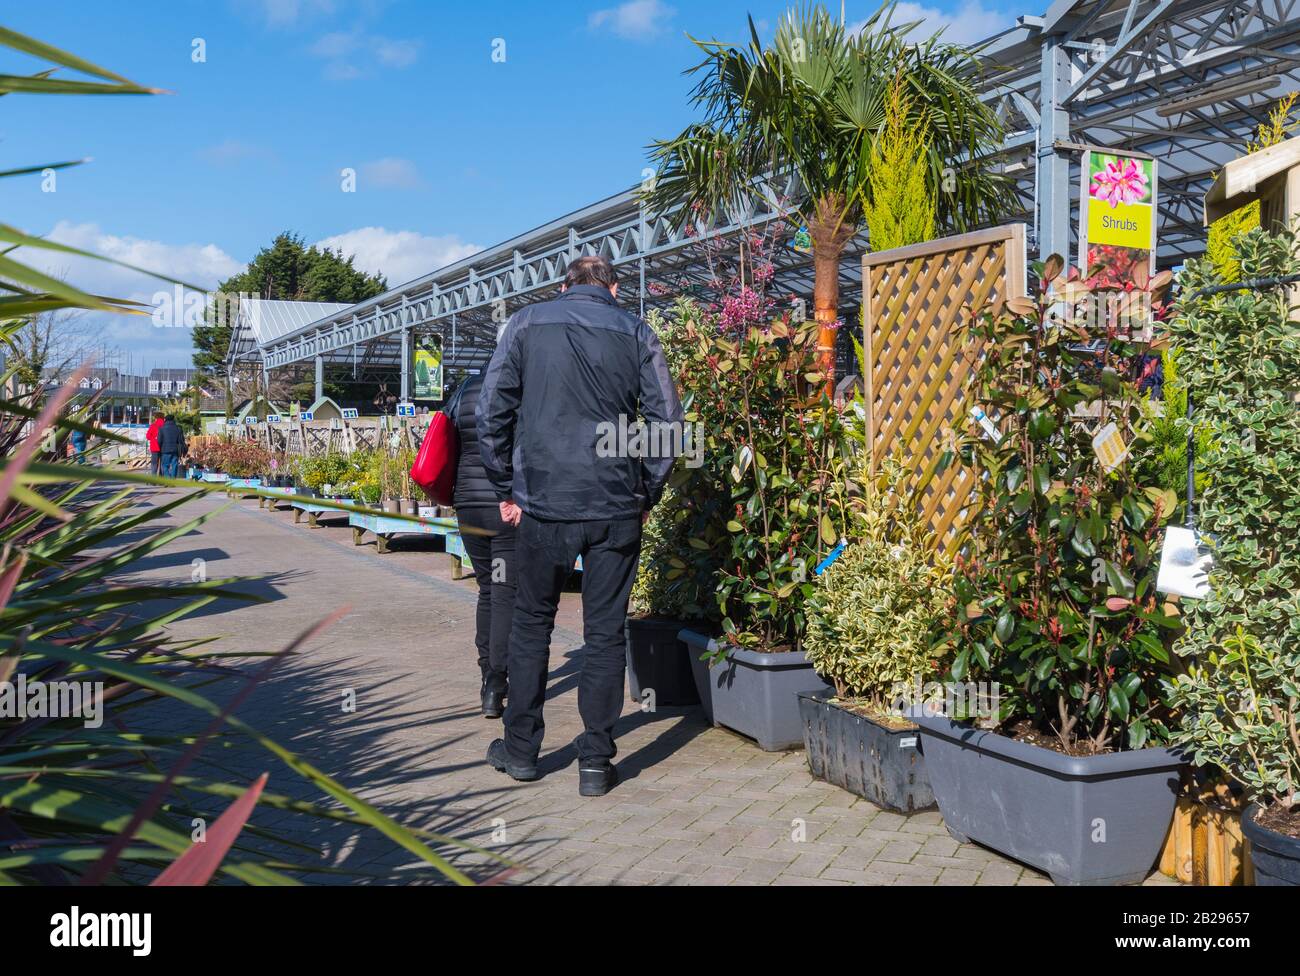 Menschen, die in einem britischen Gartencenter in England, Großbritannien, herumlaufen, Pflanzen zum Verkauf suchen und sich diese angugen. Stockfoto